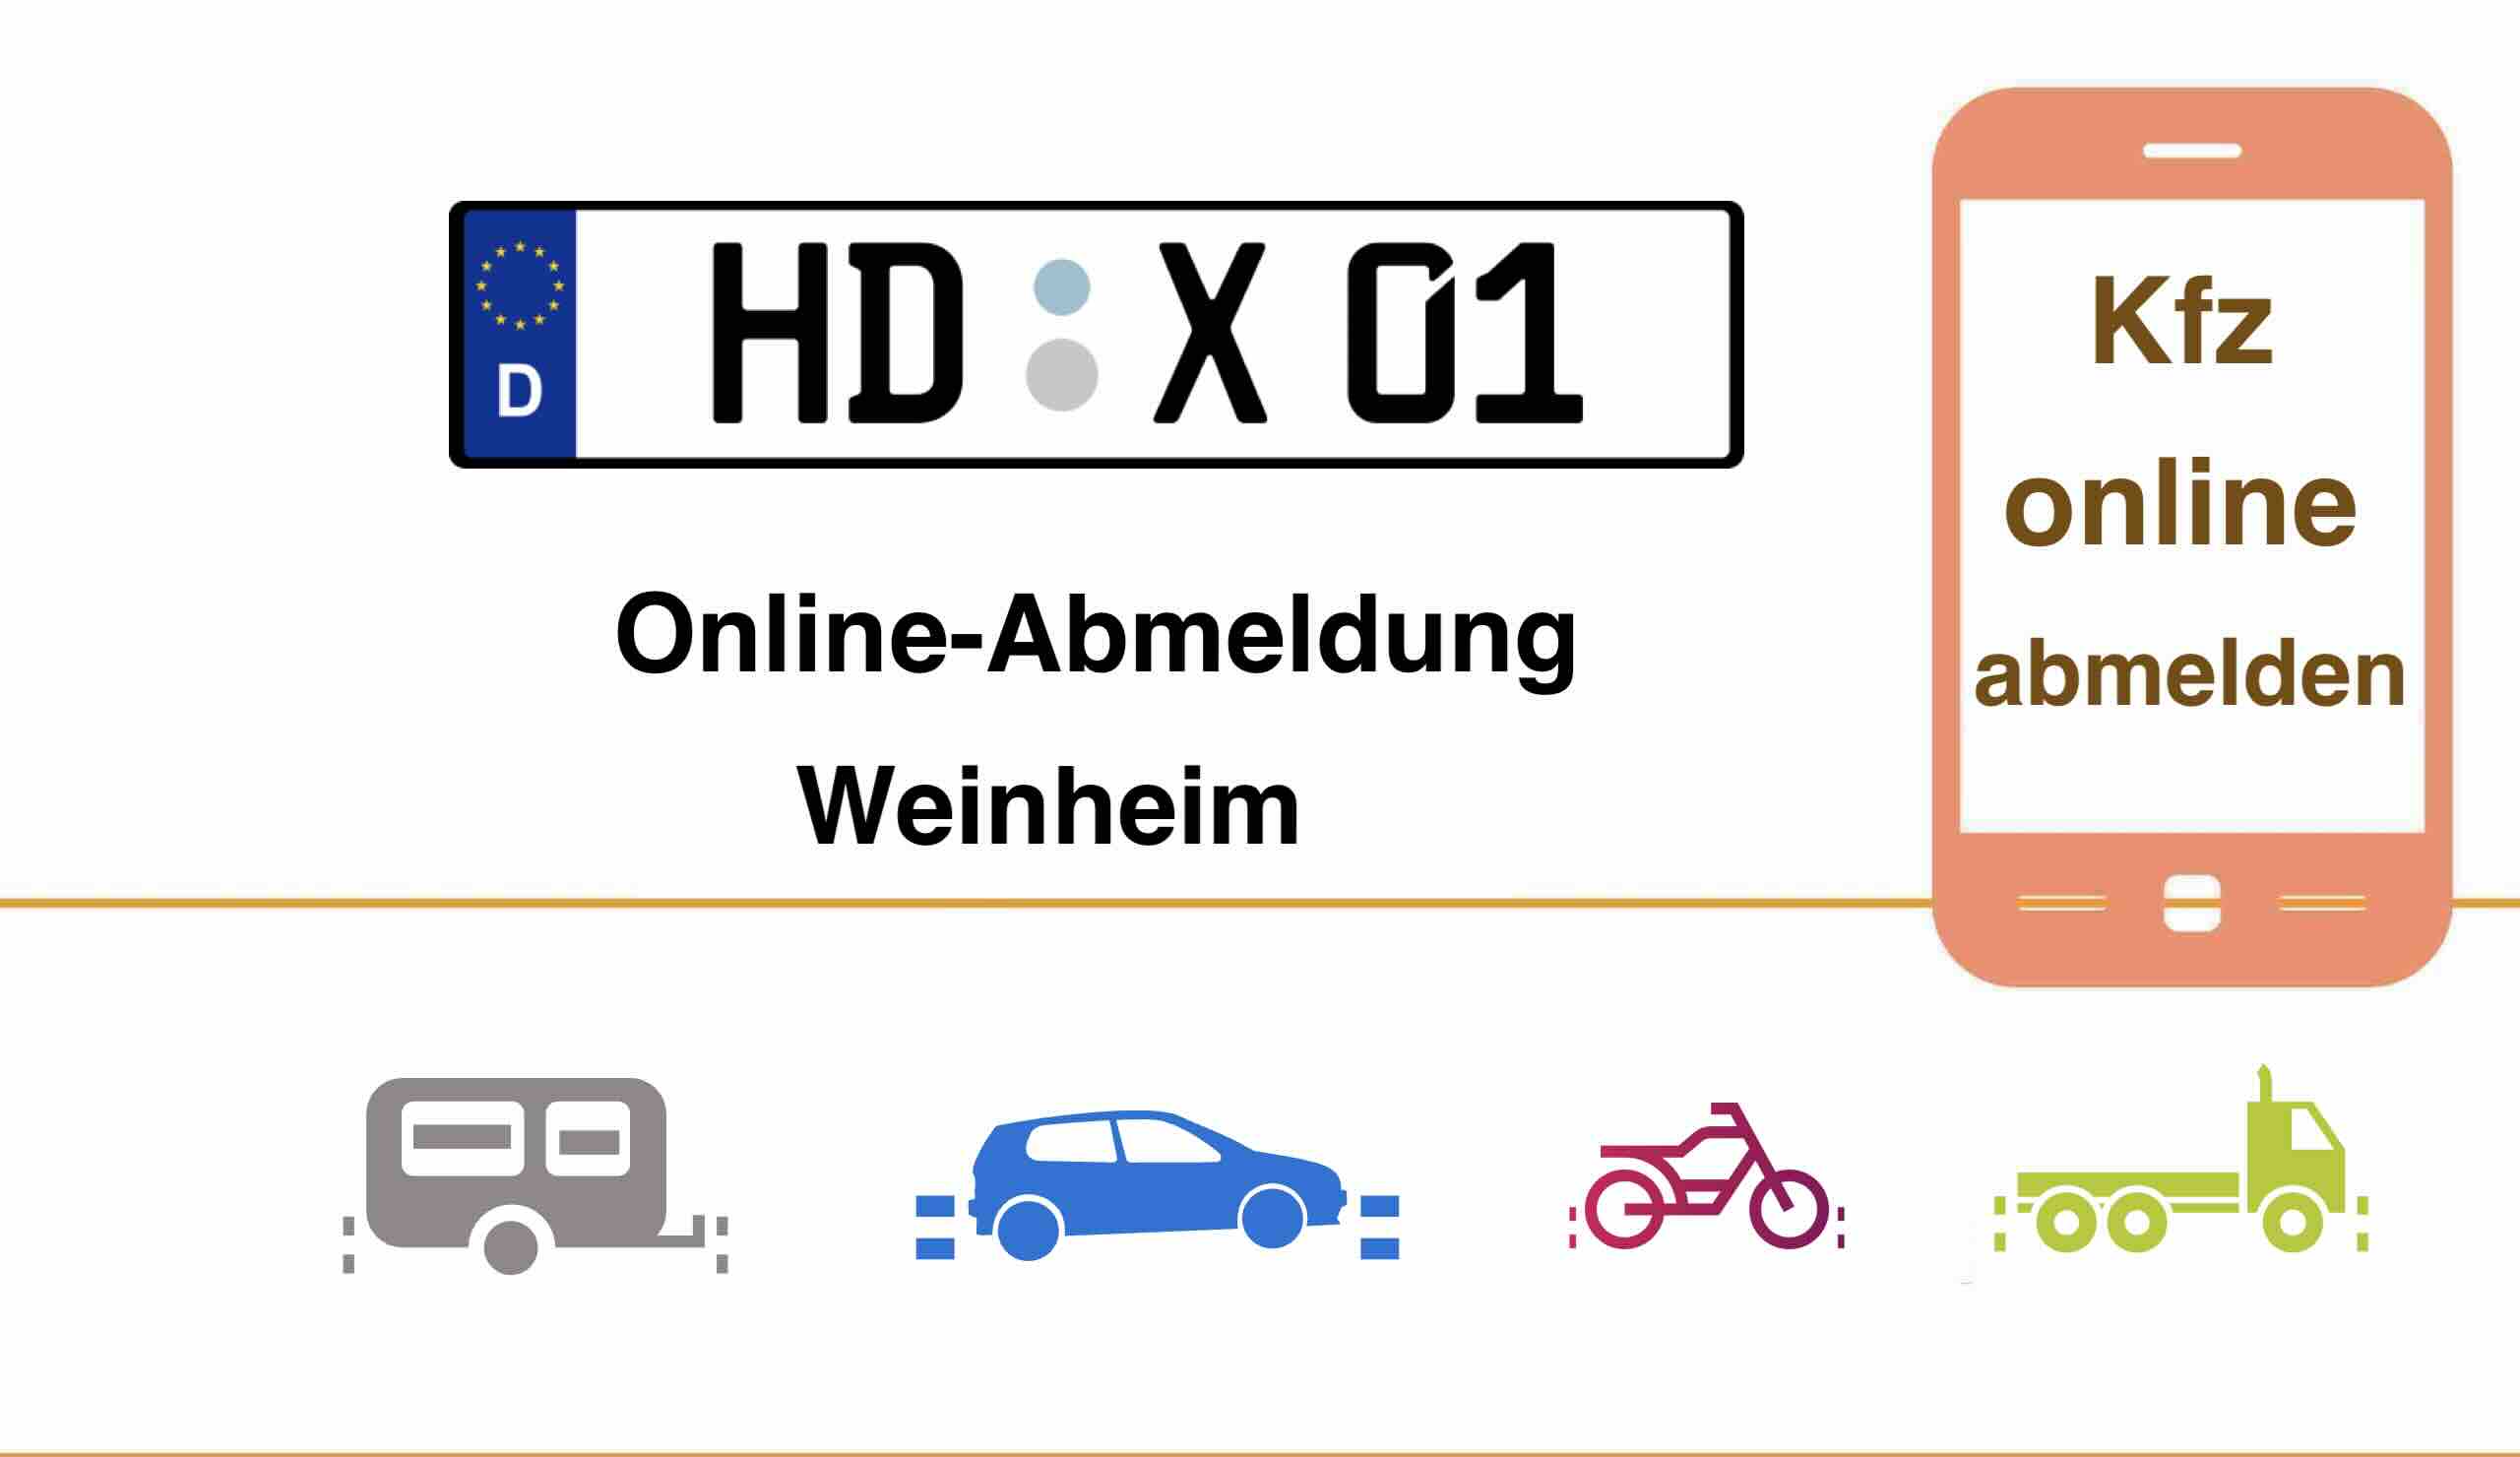 Kfz Online-Abmeldung in Weinheim 